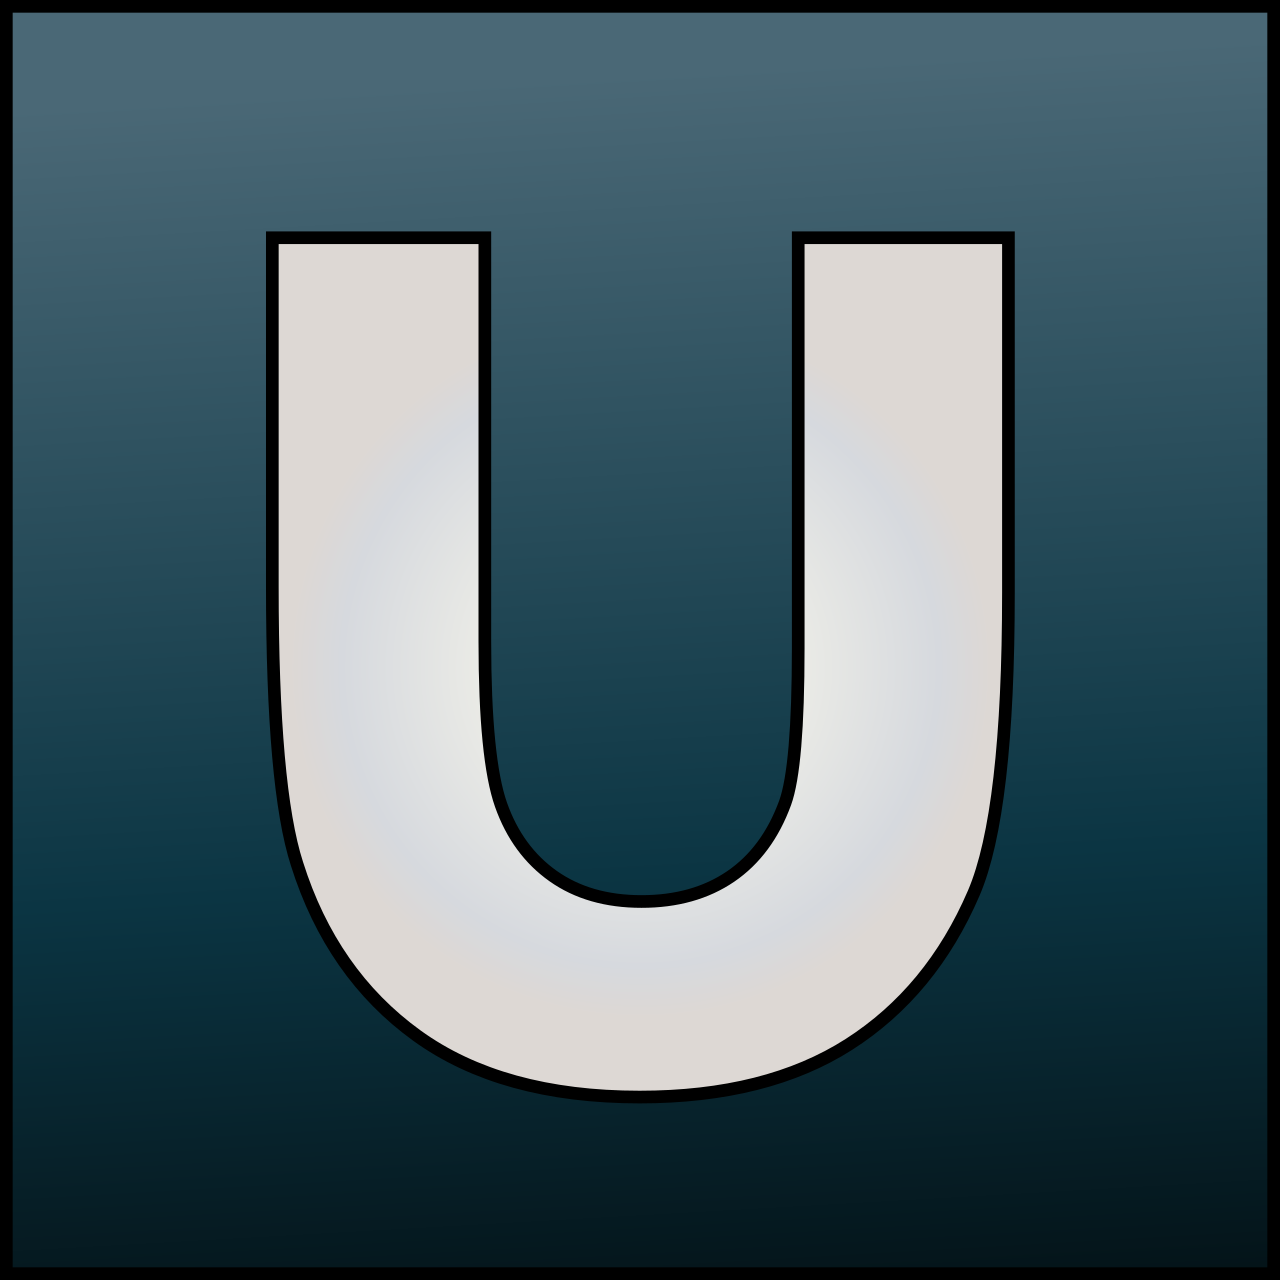 Unipro UGENE User Manual